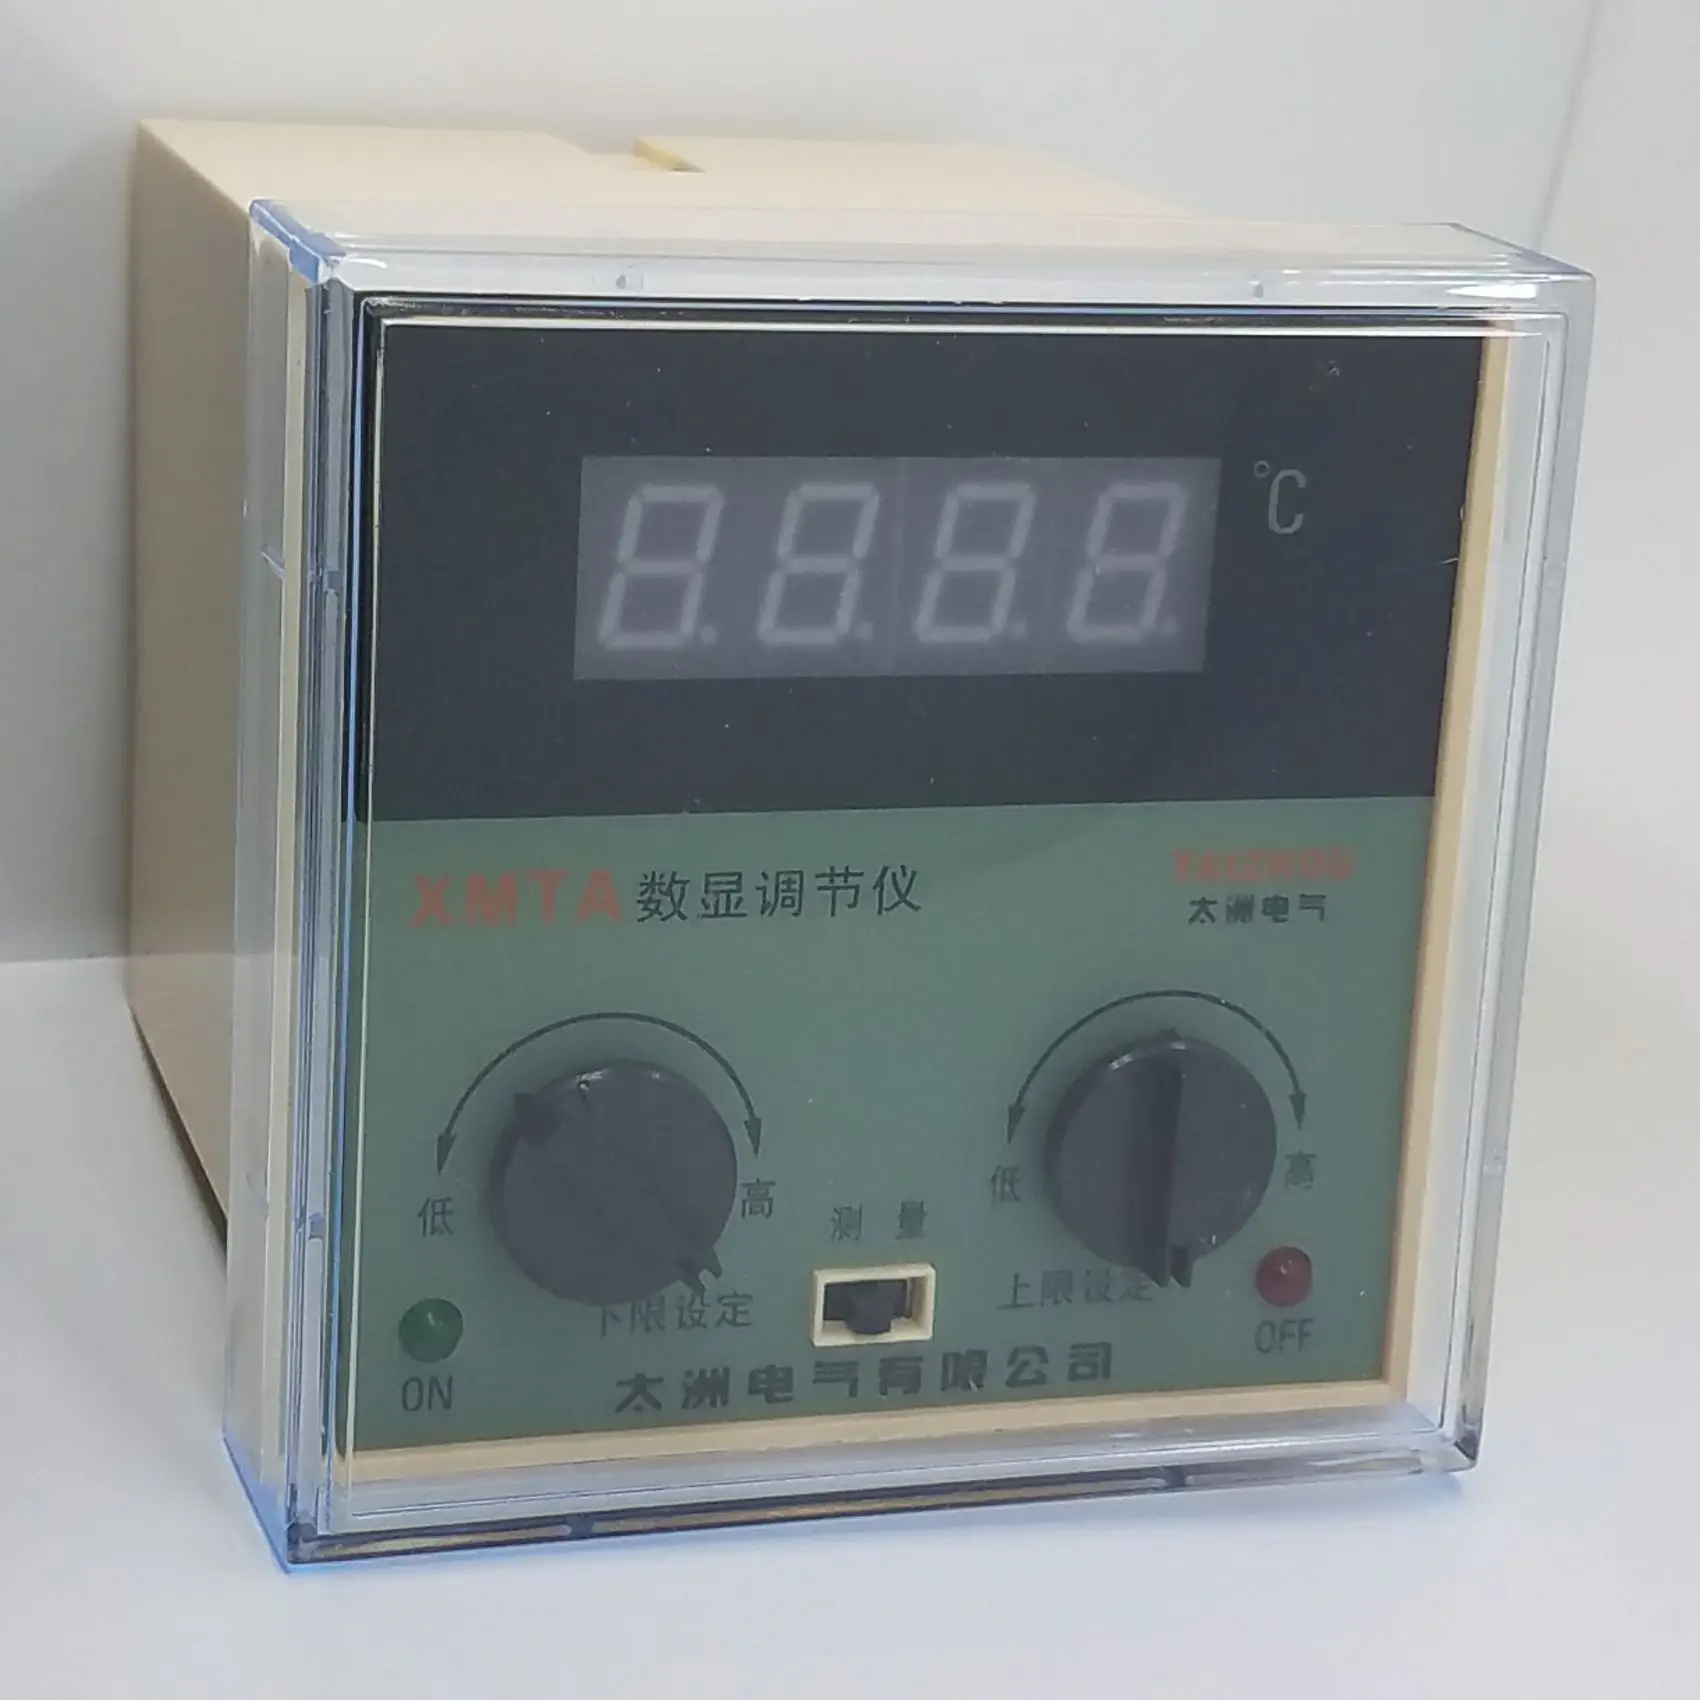 instrumento eletronico xmta 2201 2202 do controle de temperatura de digitas do medidor